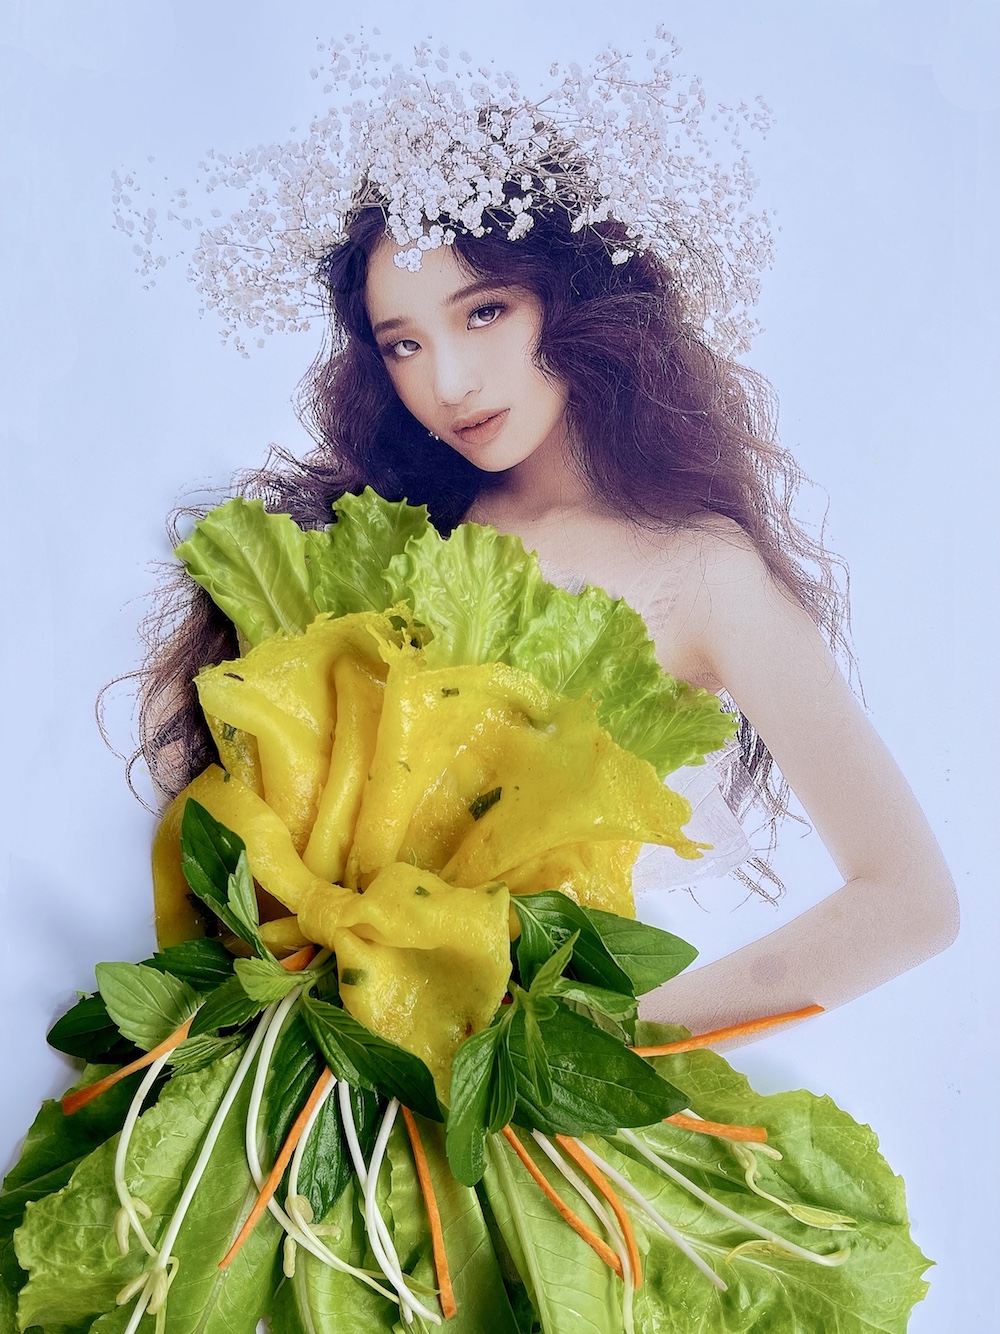 Nguyễn Minh Công mang dự án Fashion Food khoác lên người mẫu nhí Bảo Hà